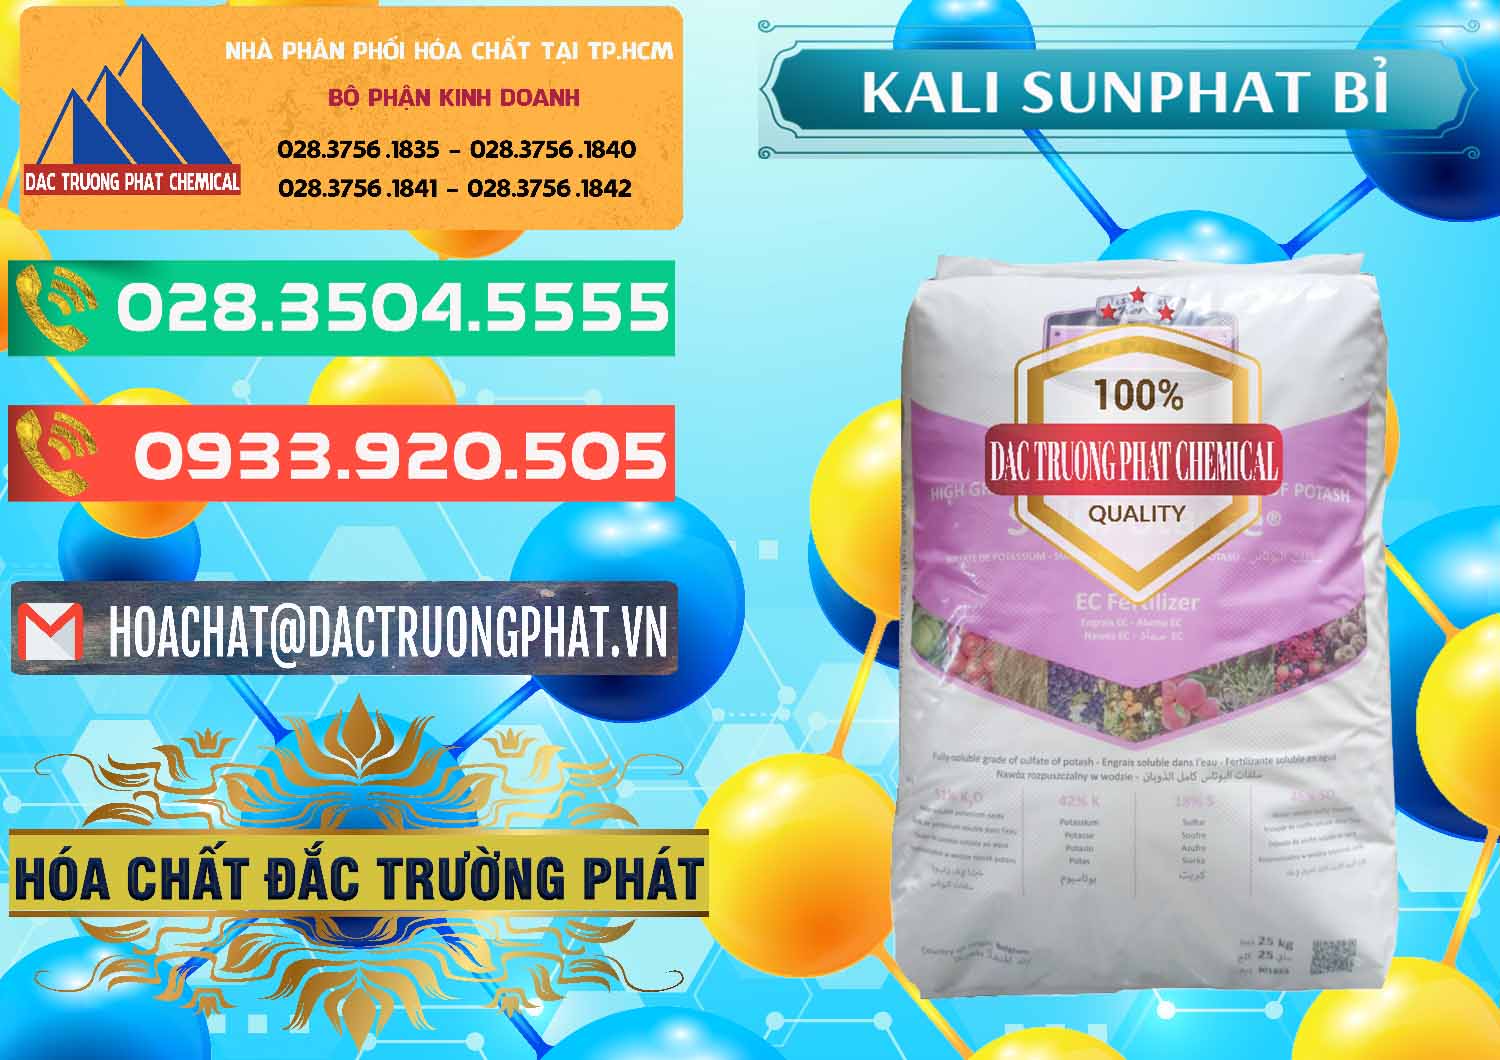 Đơn vị cung cấp và bán Kali Sunphat – K2SO4 Bỉ Belgium - 0406 - Công ty kinh doanh ( phân phối ) hóa chất tại TP.HCM - congtyhoachat.com.vn